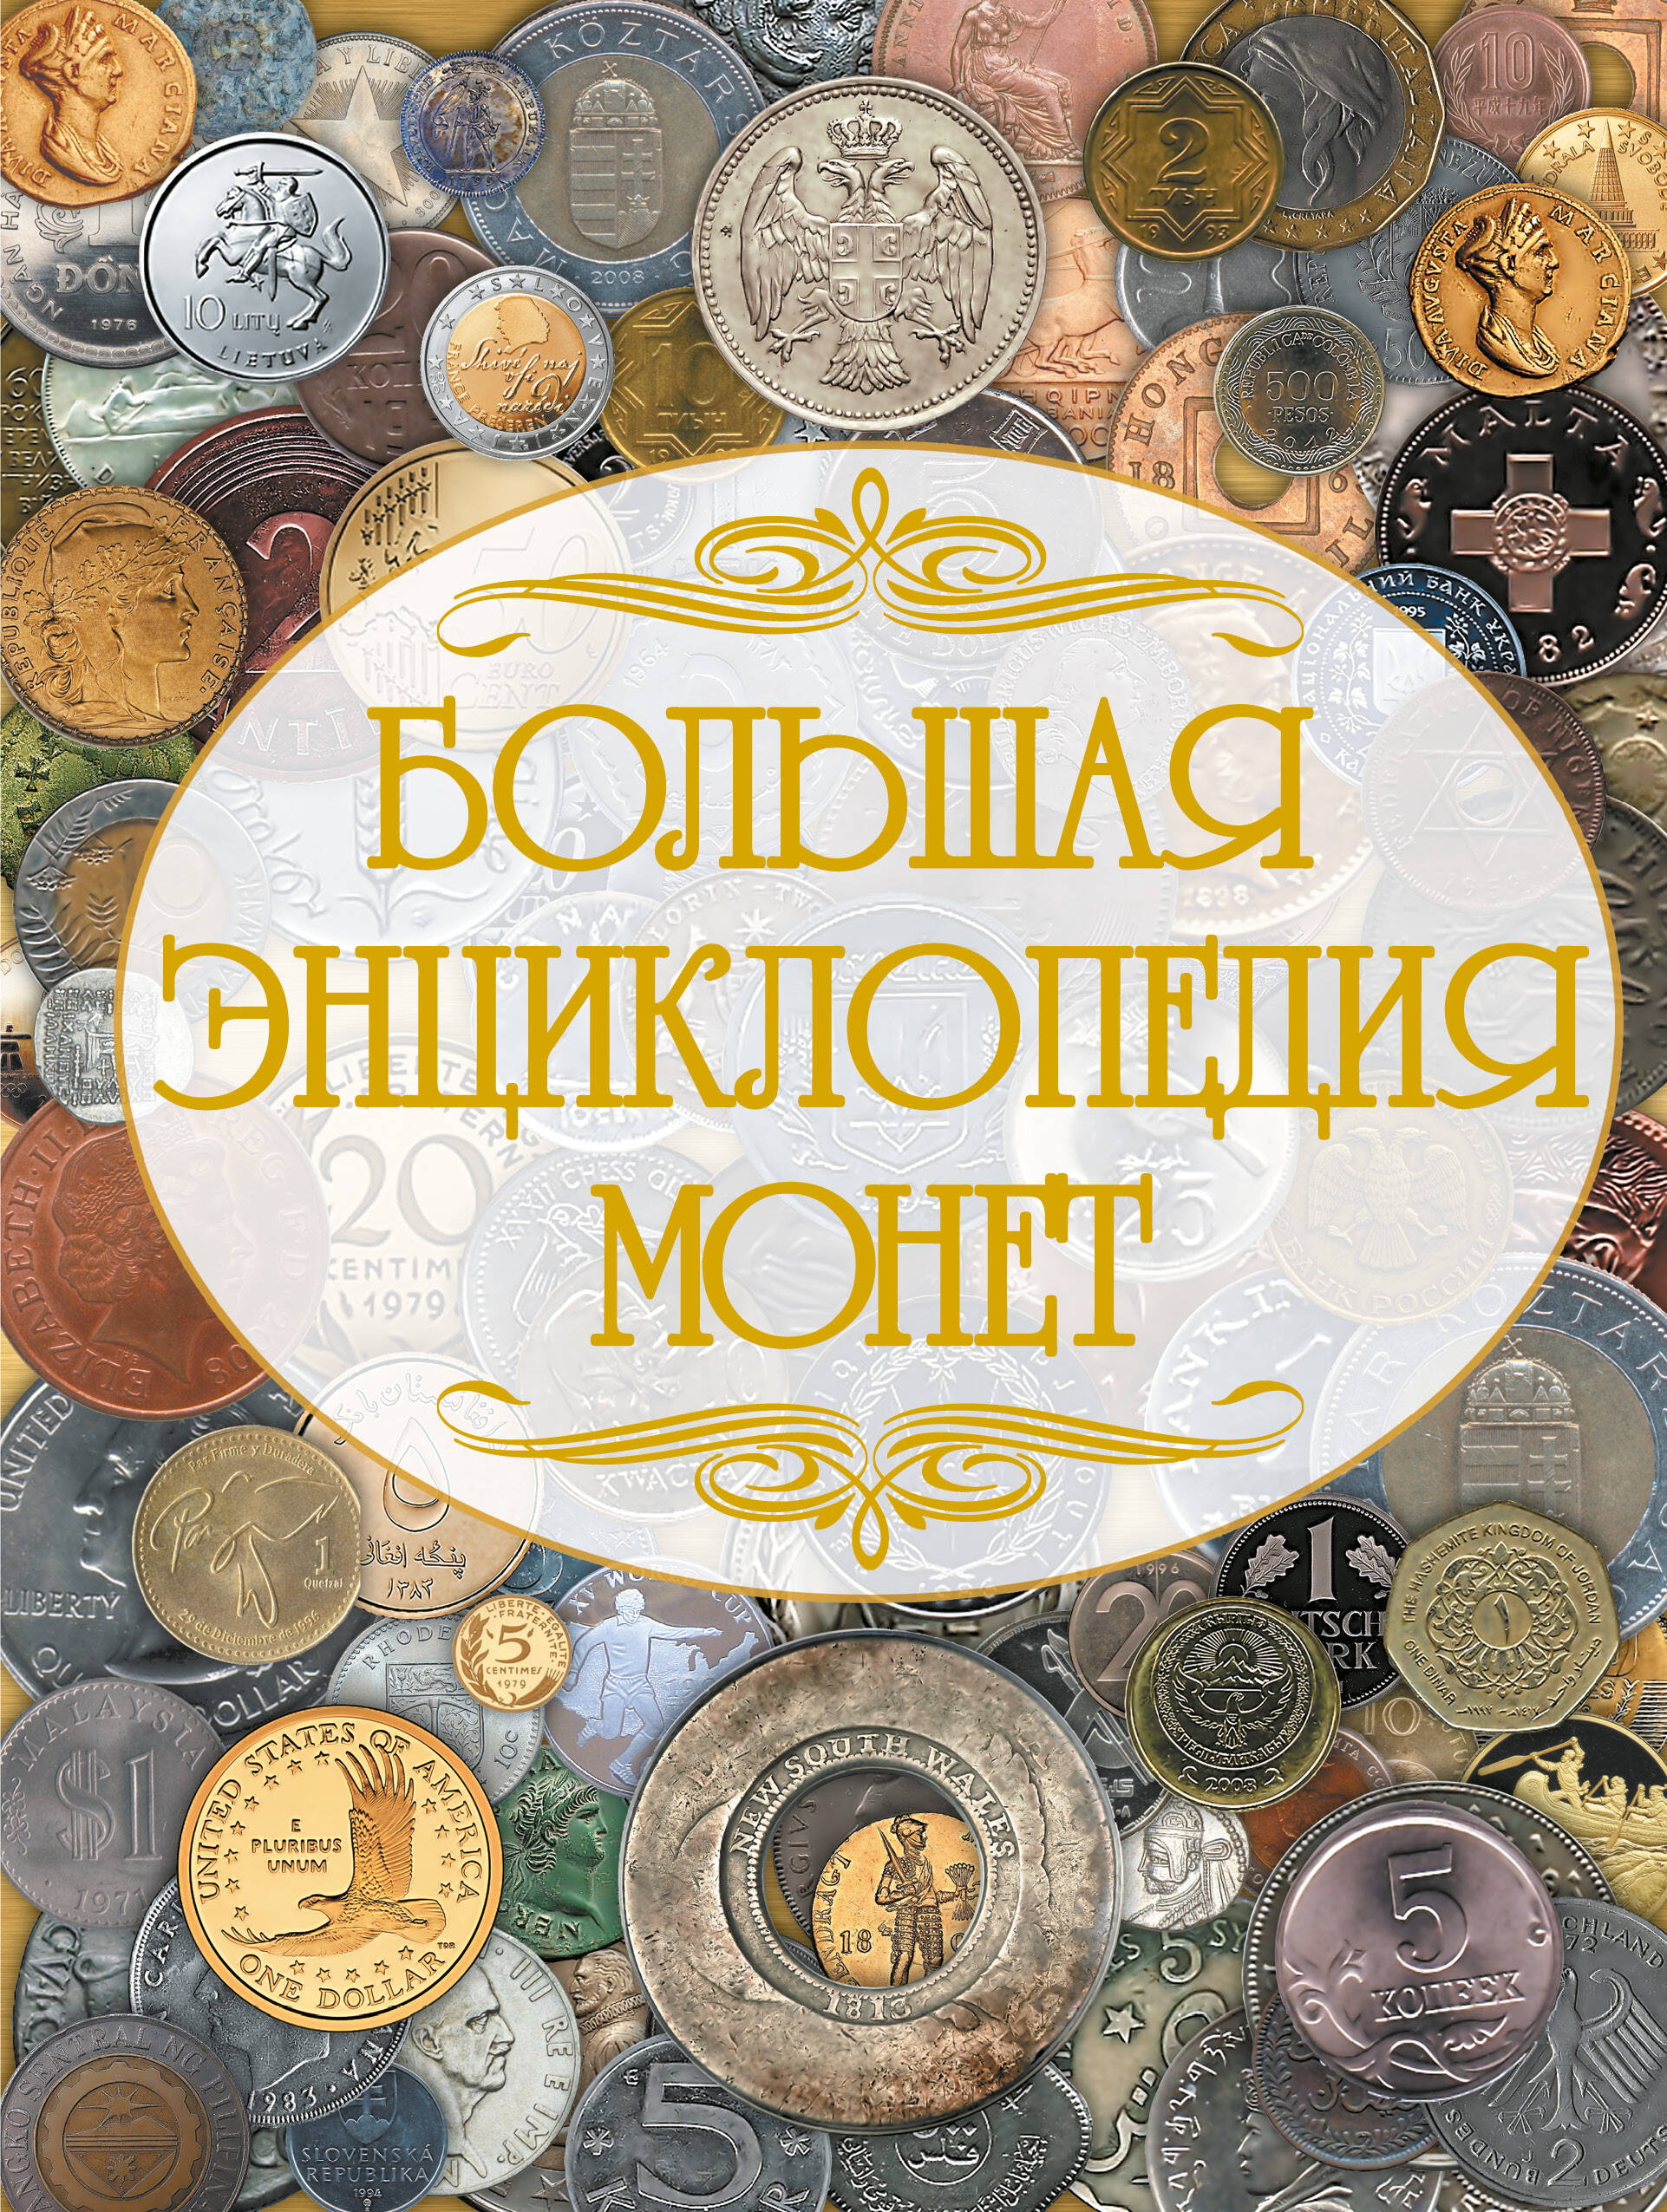  Большая энциклопедия монет - страница 0